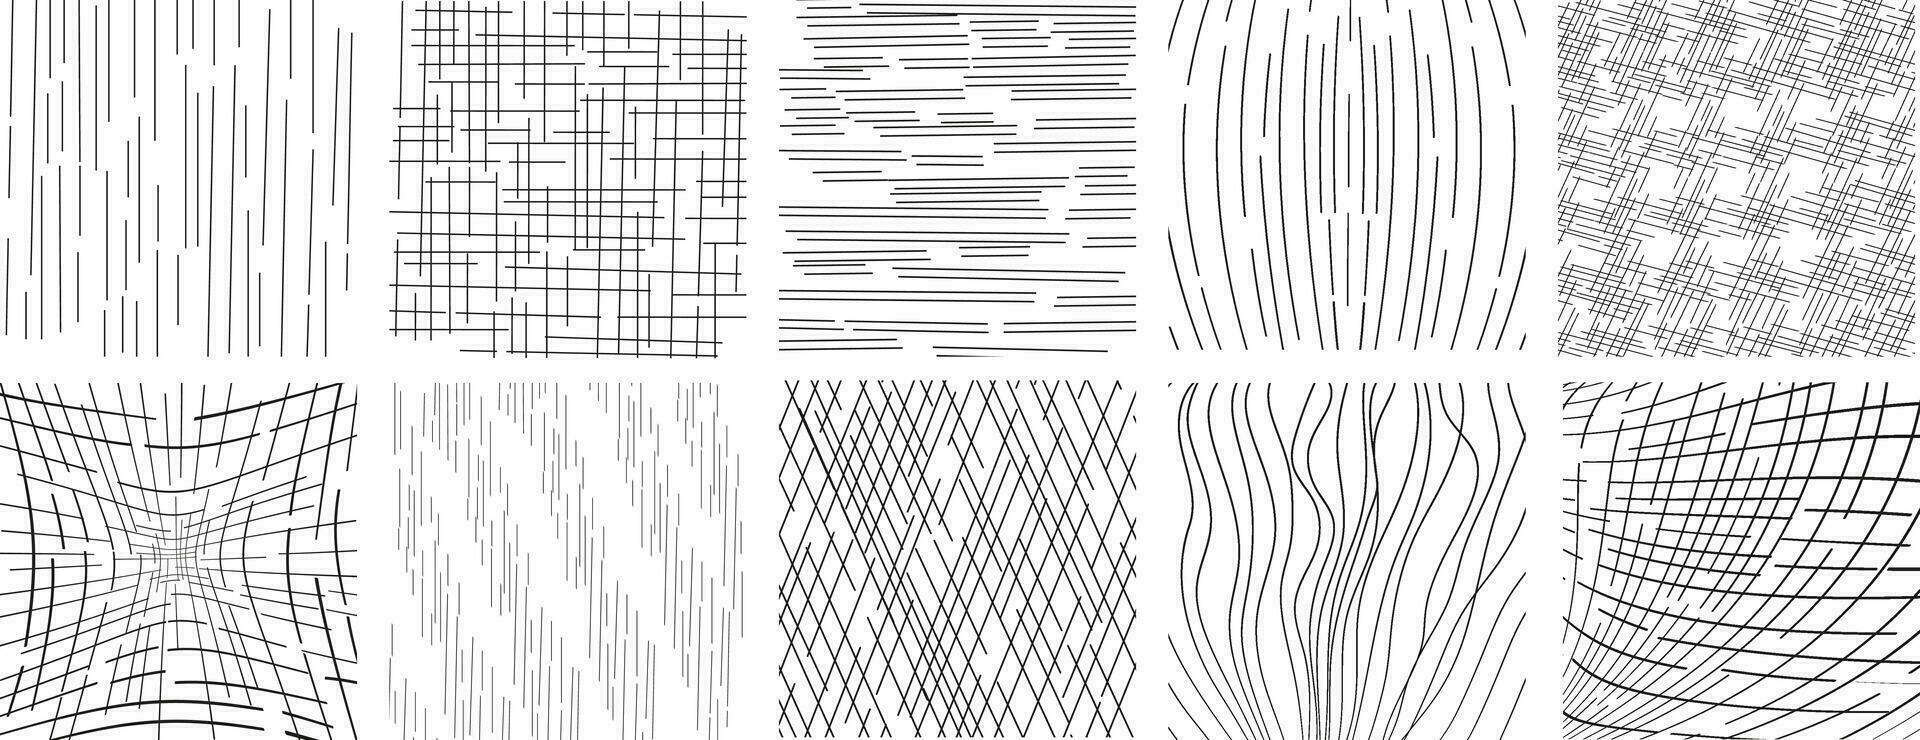 Sammlung von Hand gezeichnet ein nahtlos Vektor Hintergrund mit skizzenhaft Punkte.Vektor Kritzeleien, Gitter mit unregelmäßig, horizontal und wellig Striche, Gekritzel Muster.